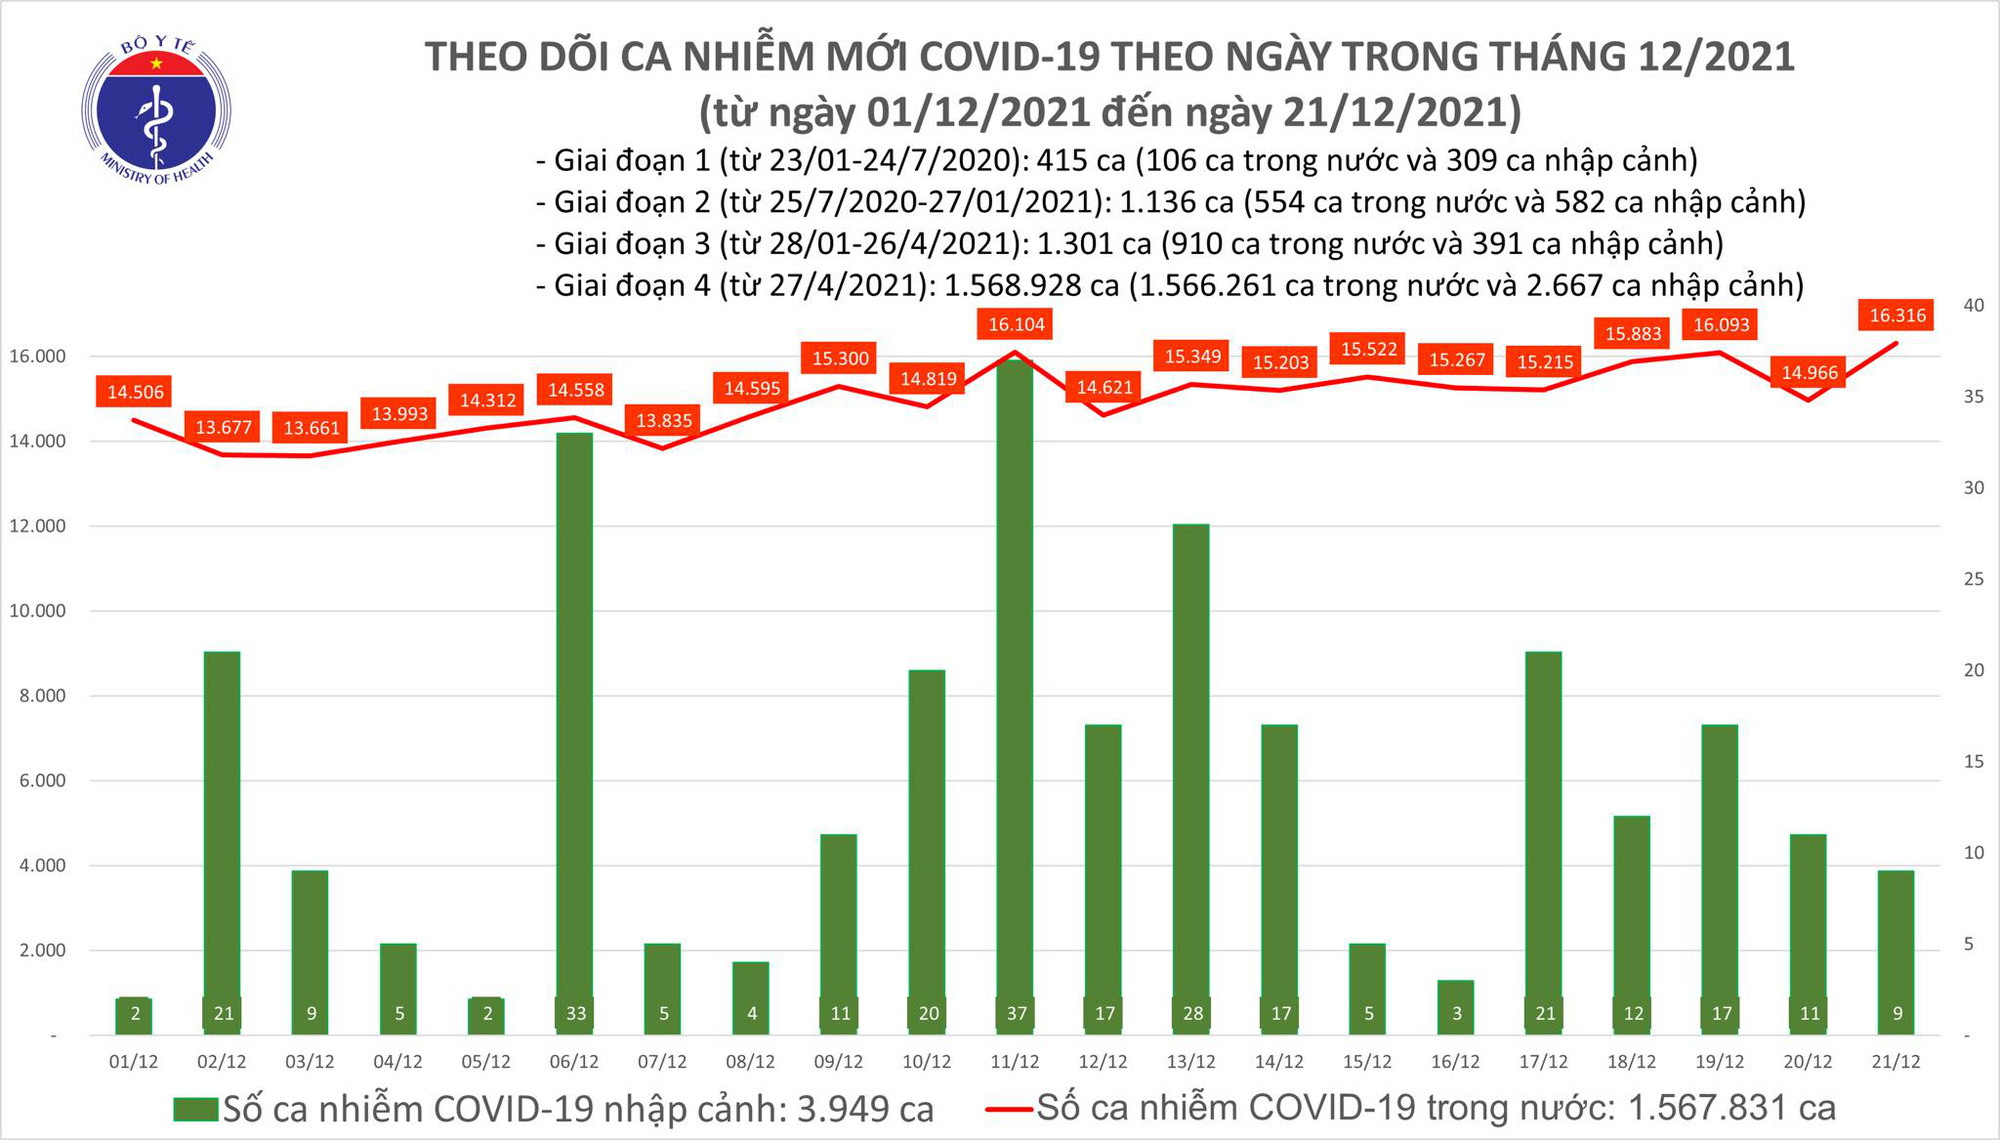 Ngày 21/12: Có 16.325 ca mắc COVID-19, Hà Nội lại nhiều nhất cả nước với 1.704 ca - Ảnh 1.